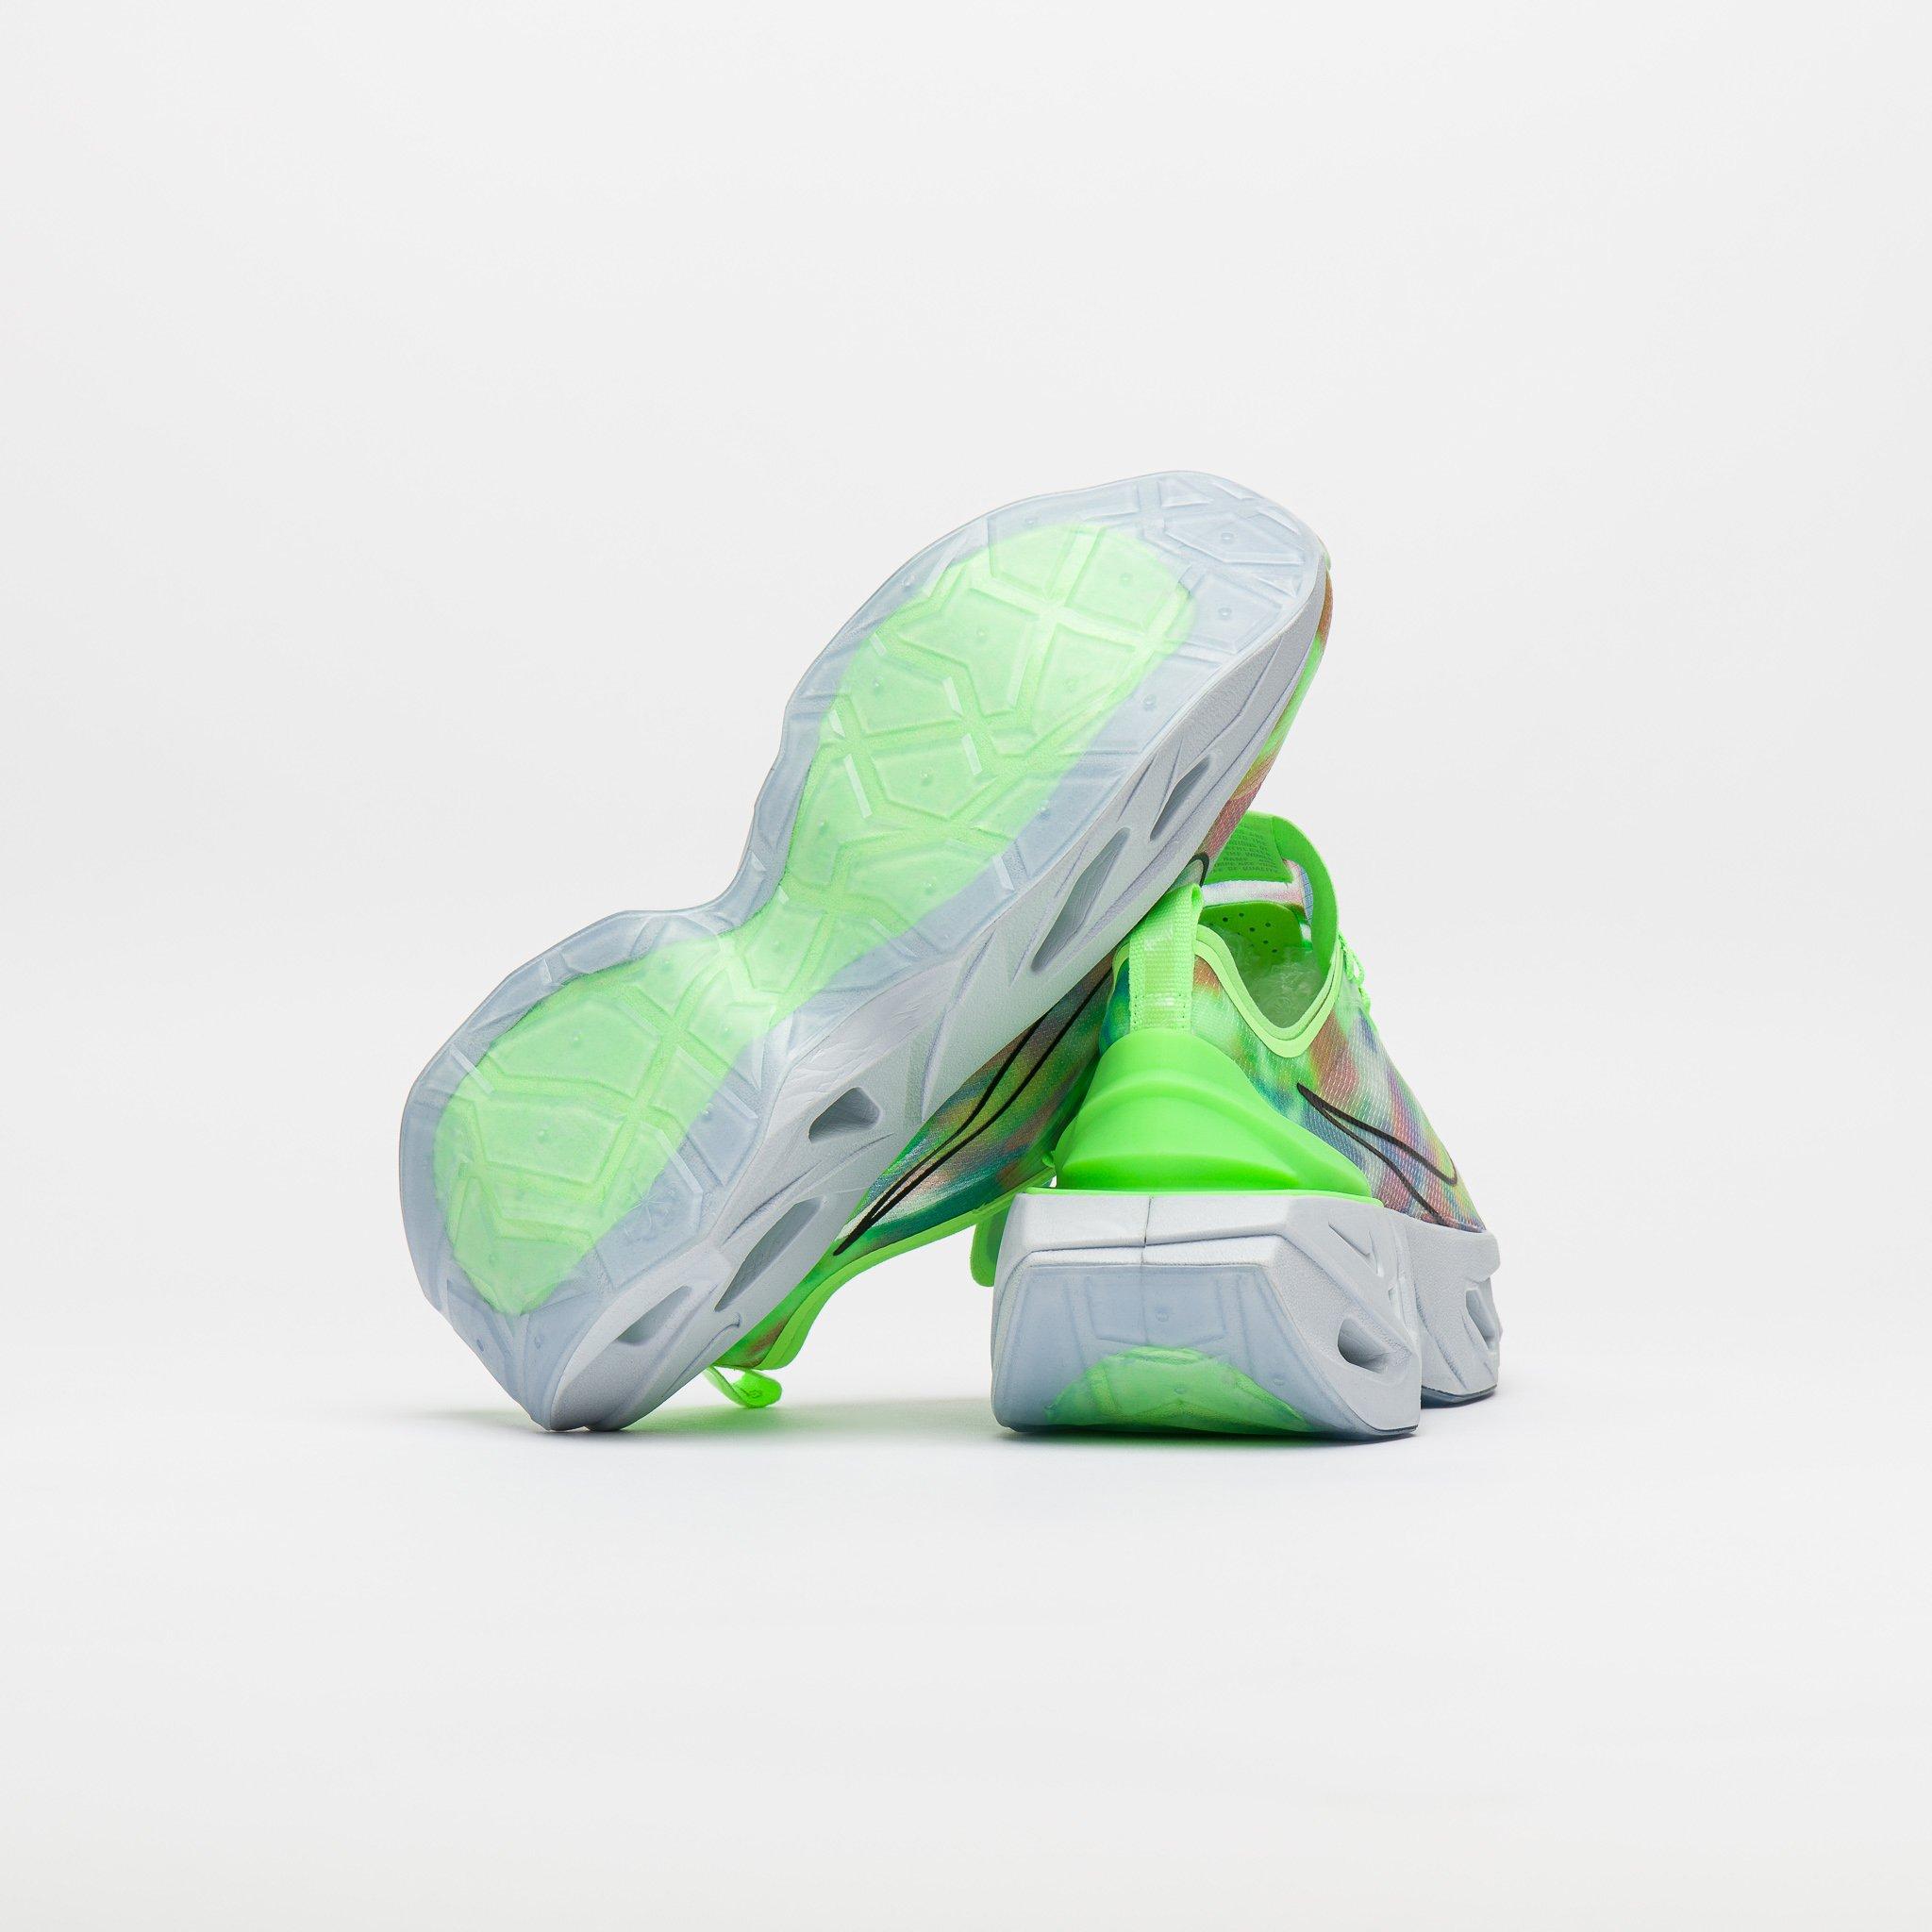 zoomx vista grind neon mesh sneakers